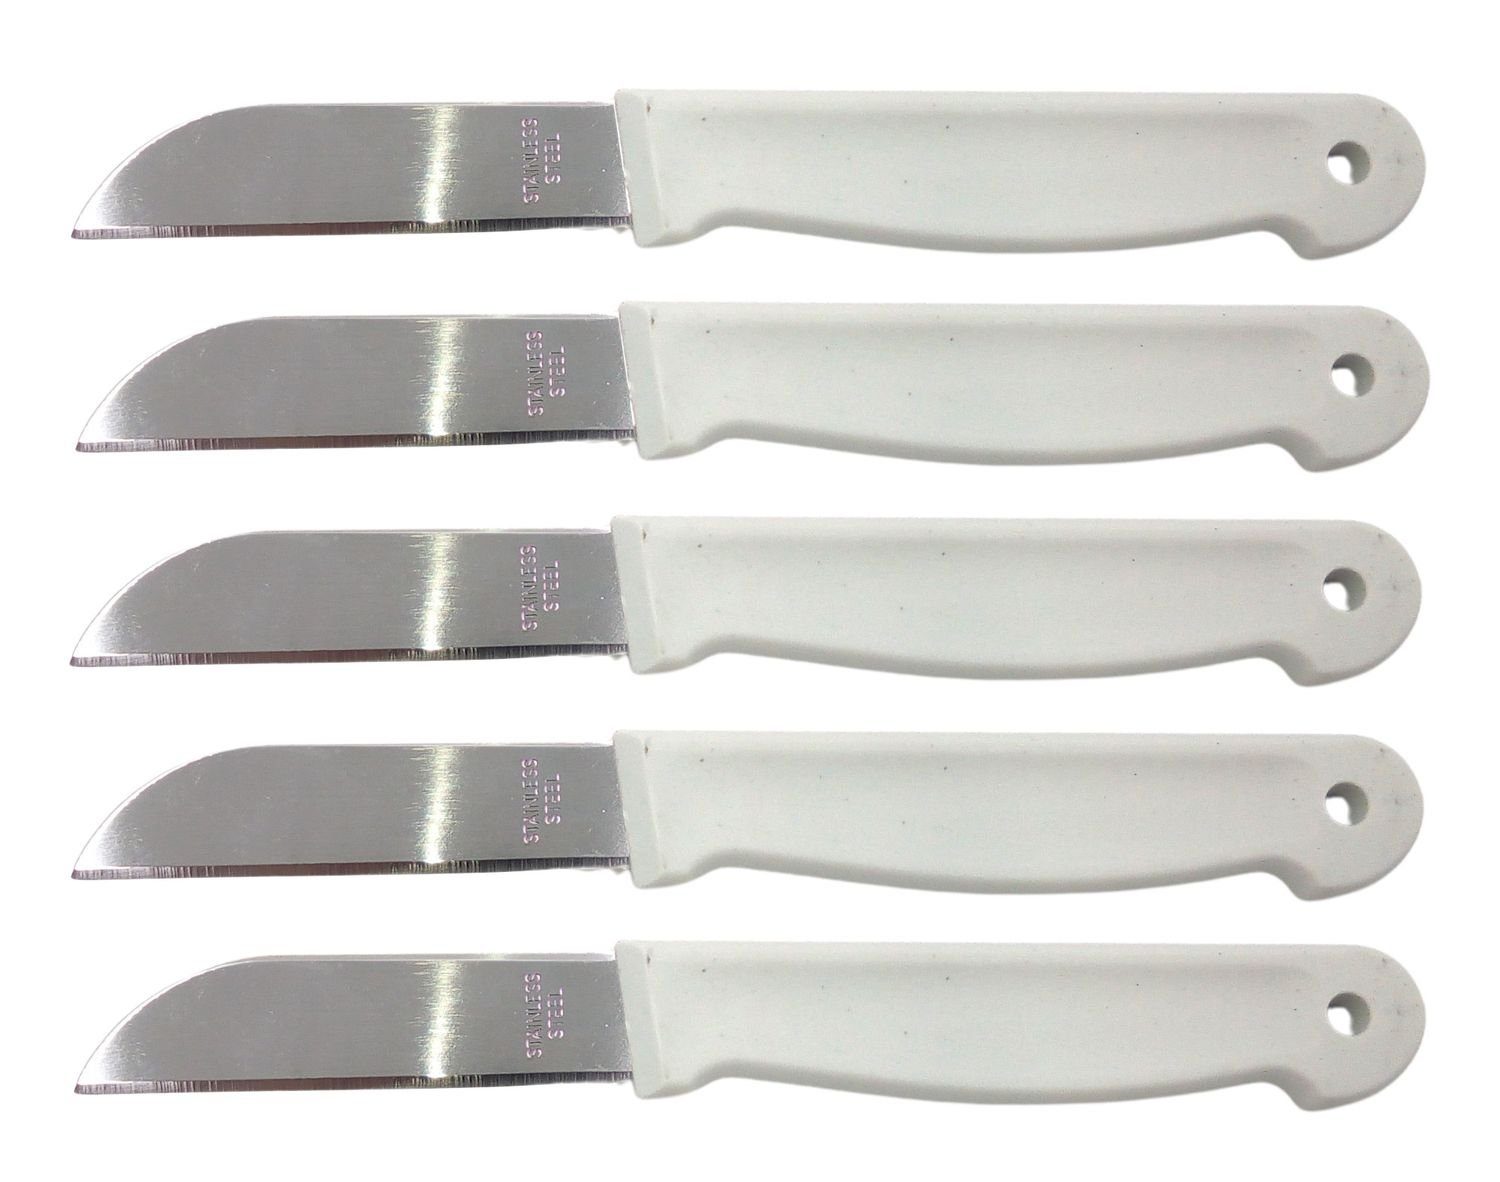 Deluxa Universalküchenmesser Obstmesser 5er-Set Schälmesser Gemüsemesser Küchenmesser Messerset farben:weiß